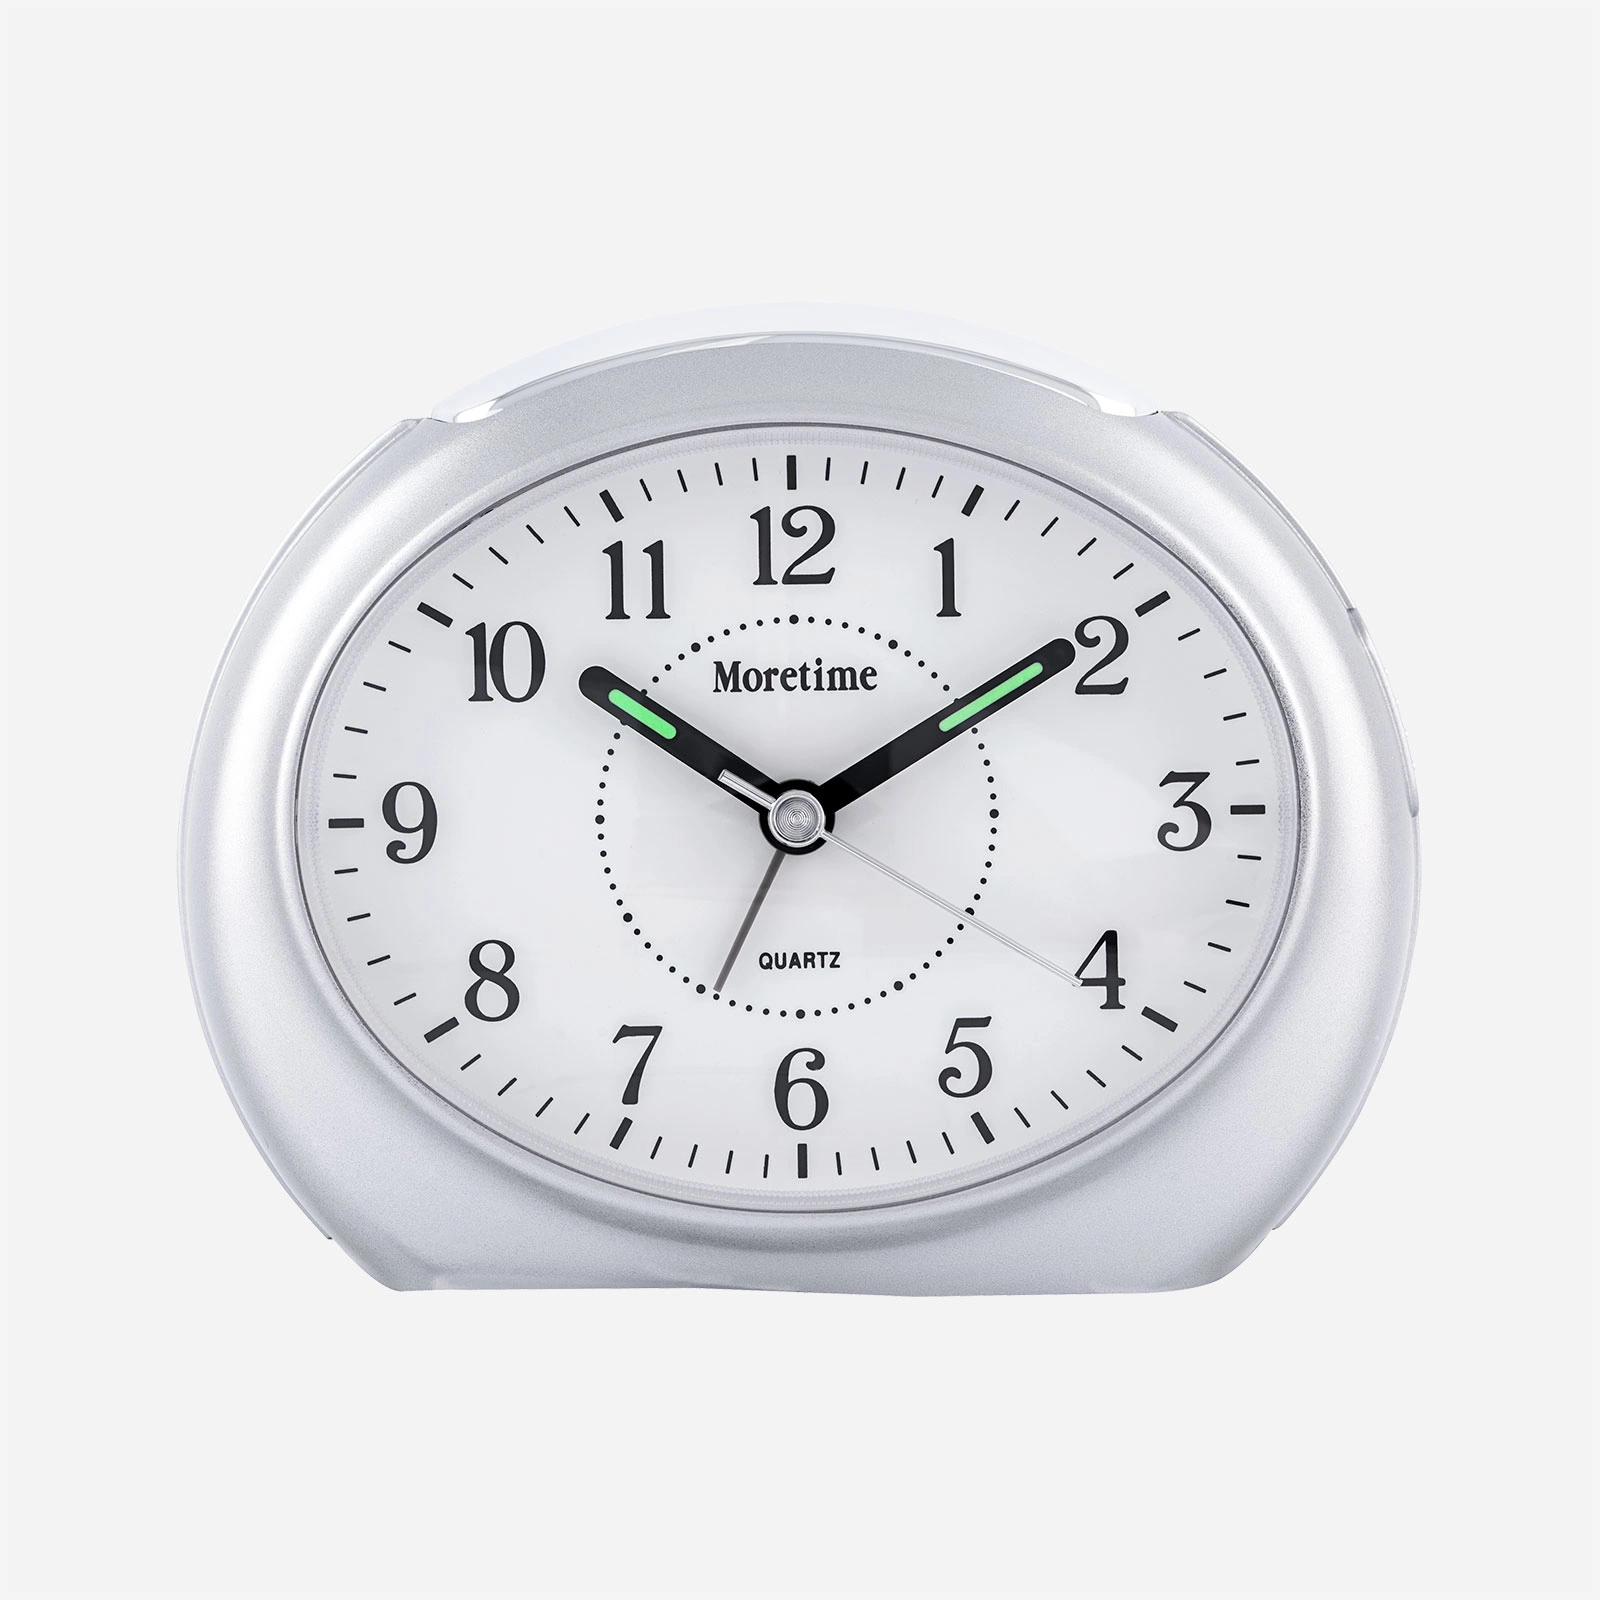 Väckarklocka - oval, silverfärgad  12x9 cm